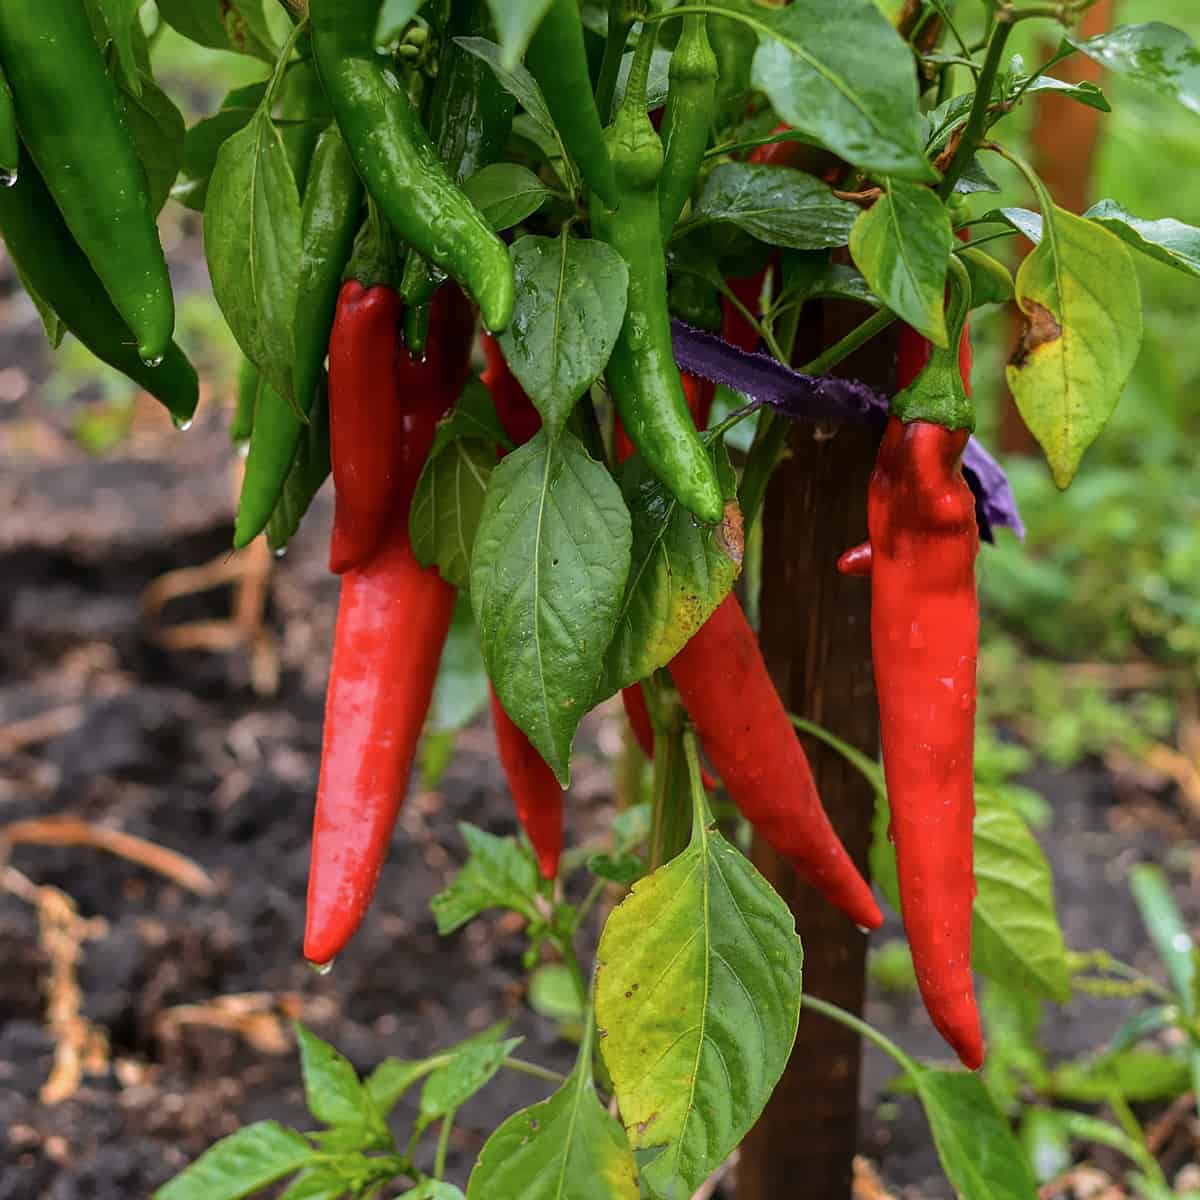 Growing peppers in a garden